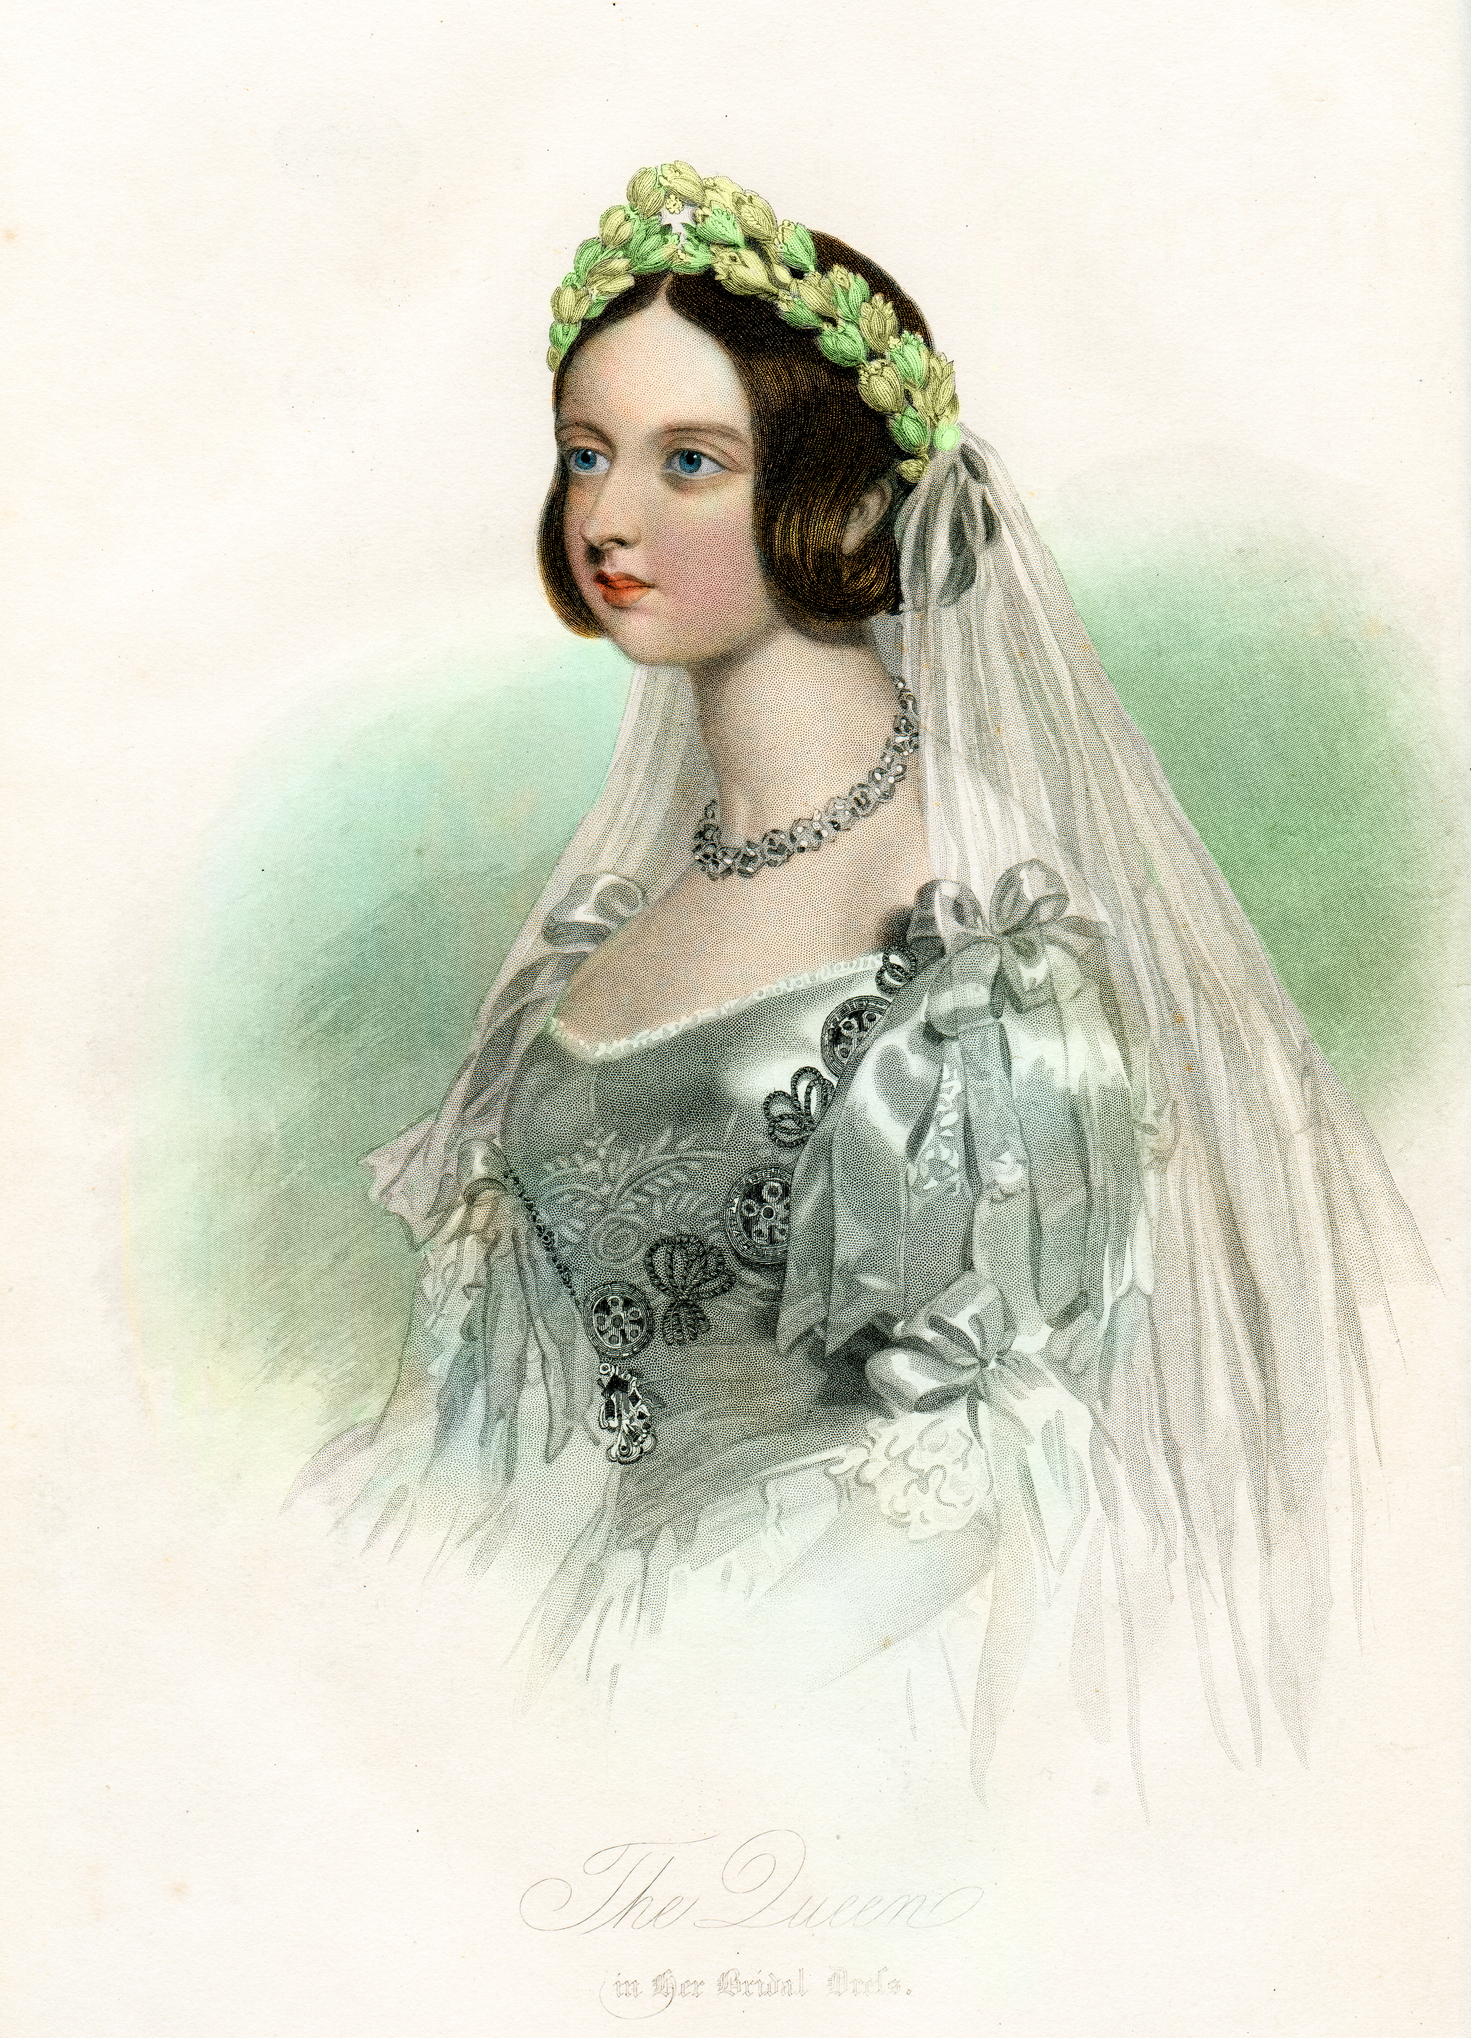 drawing of queen victoria in her wedding dress